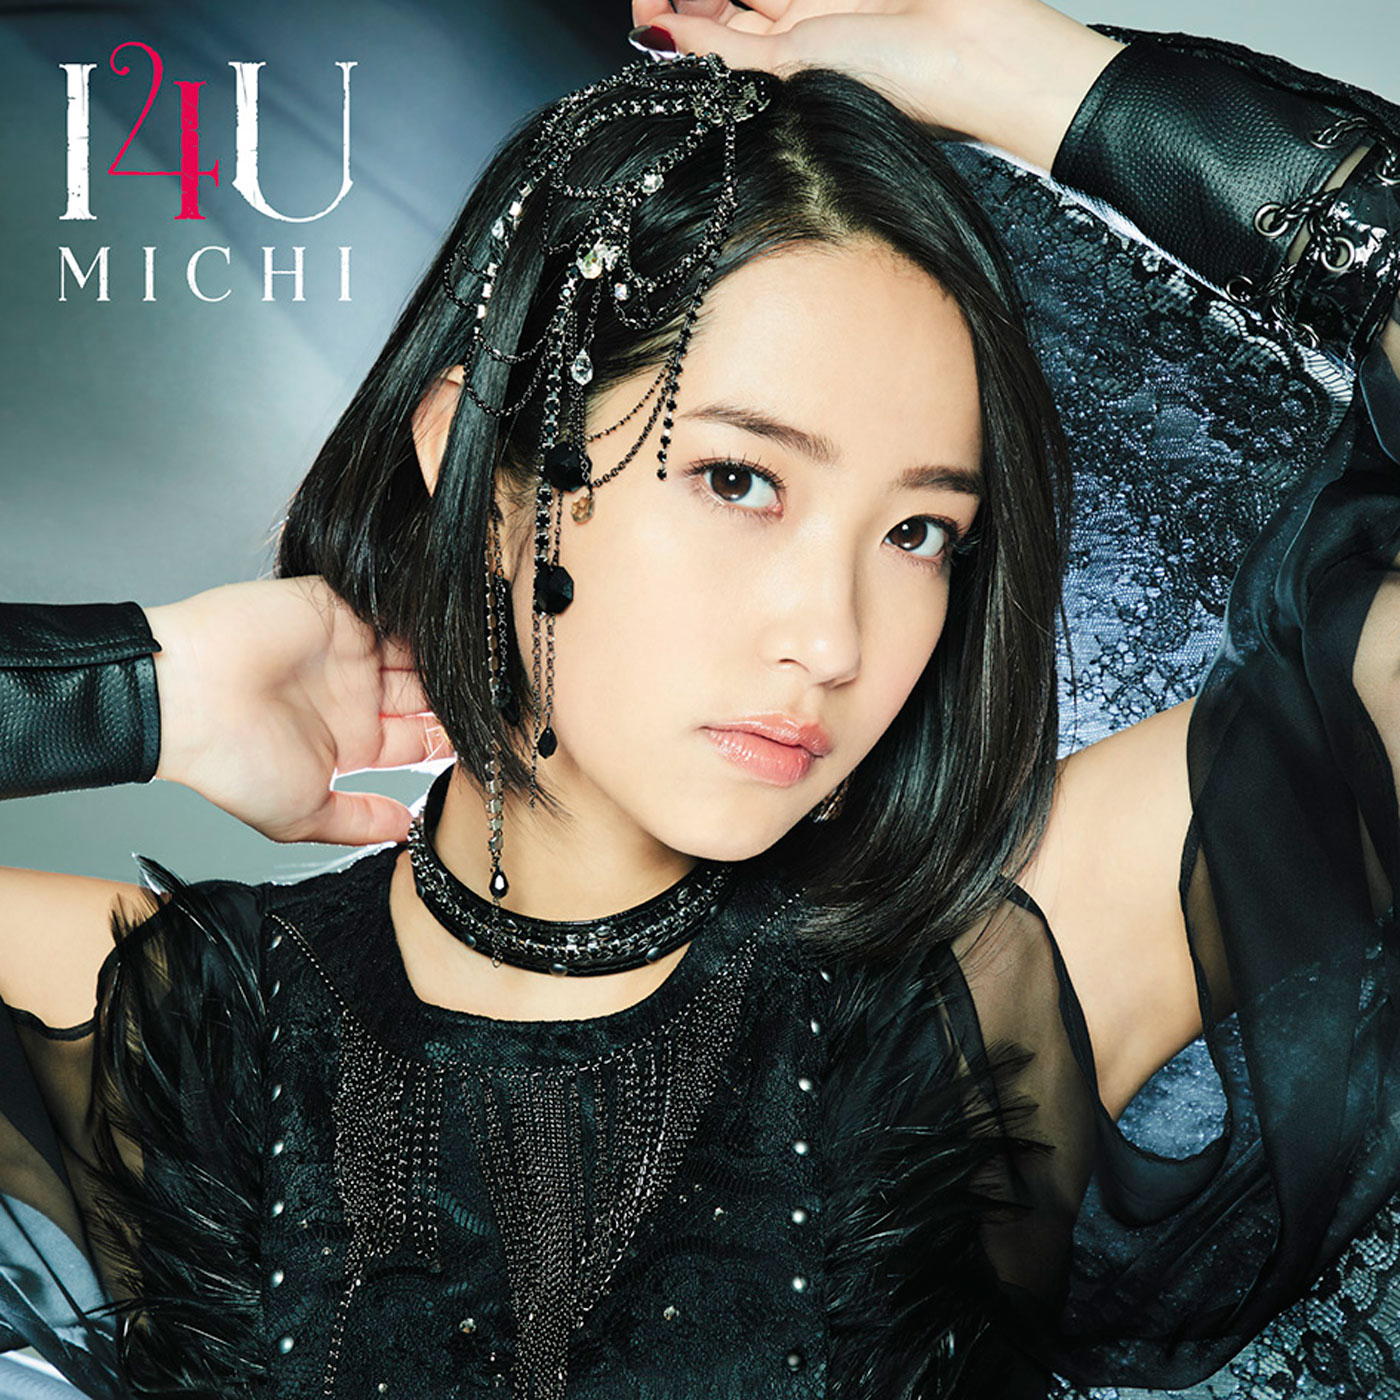 I4U(Michi的演唱歌曲)